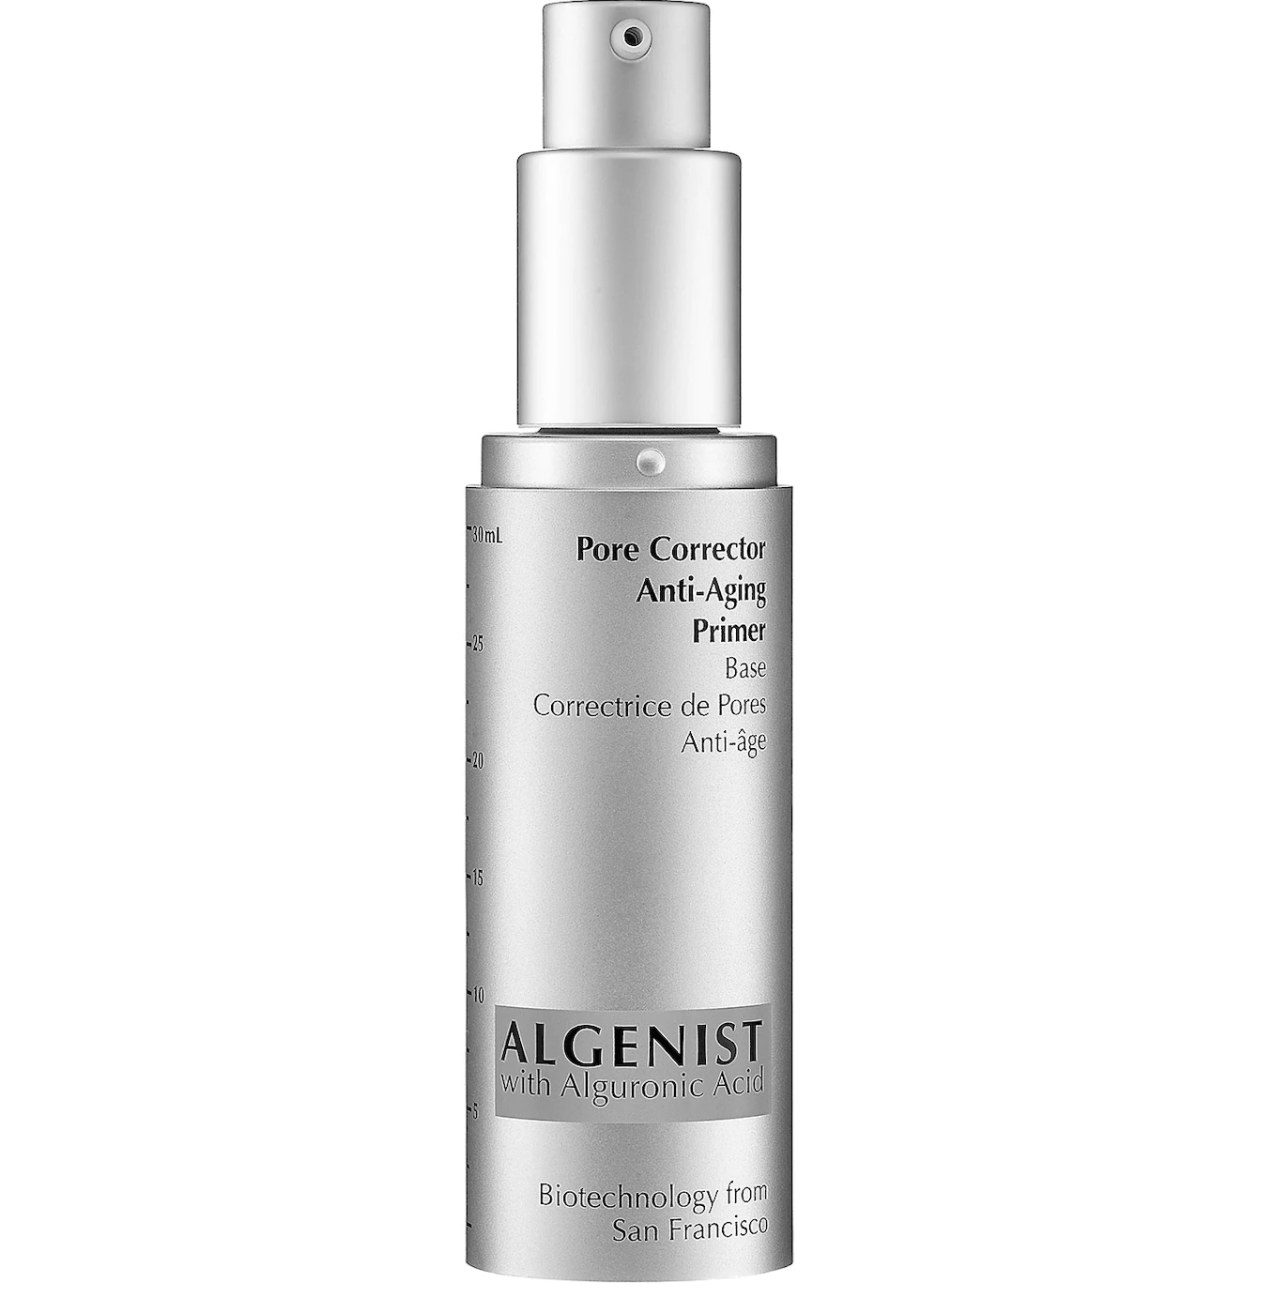 Bottle of Algenist anti-aging primer